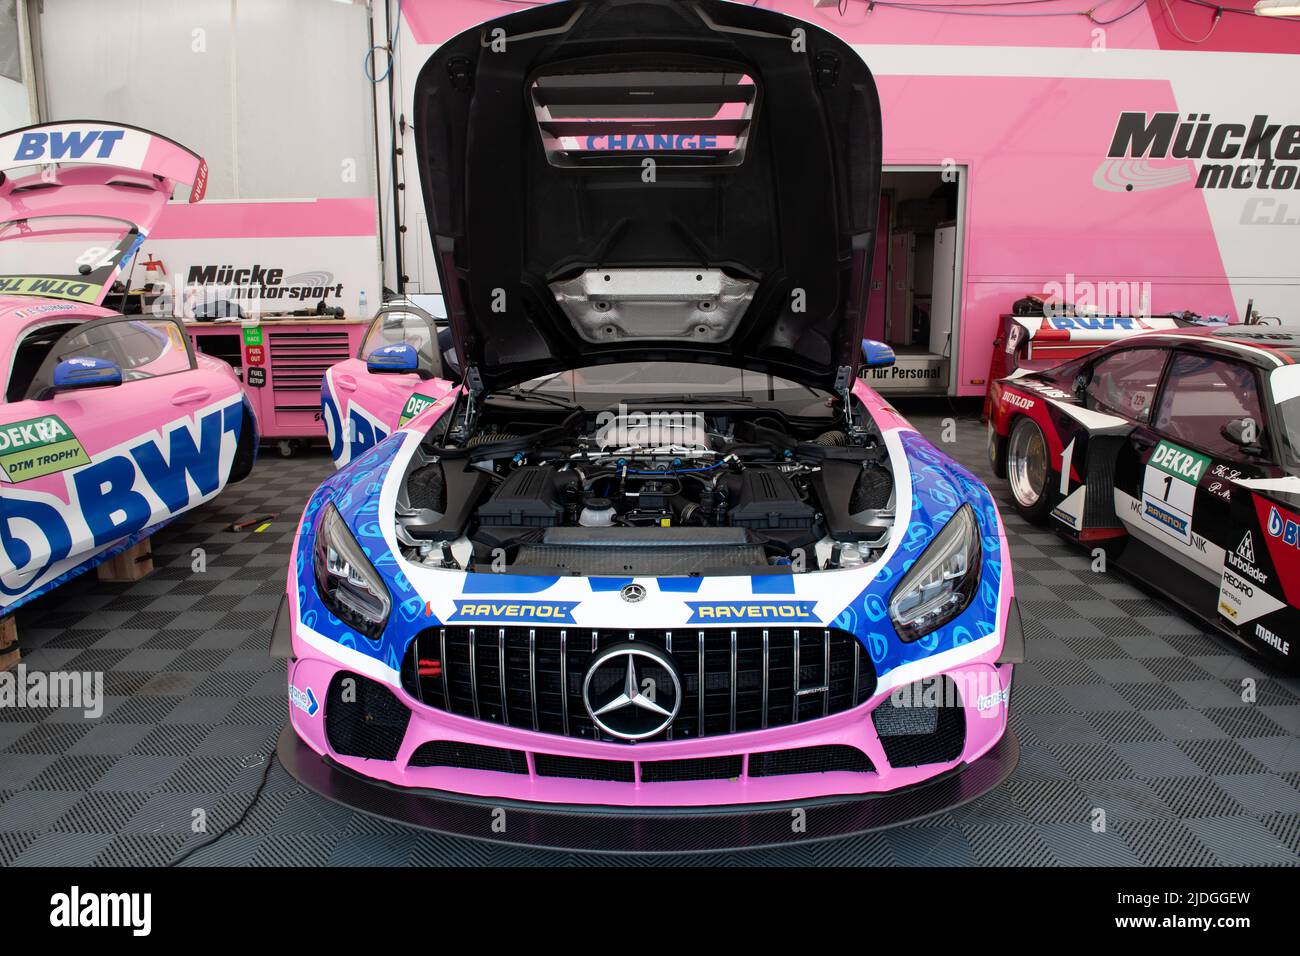 Mercedes AMG GT carreras de color rosa super coche en el circuito de caja, abierto cover.and motor visible Imola, Italia, 17 2022 de junio. DTM Foto de stock